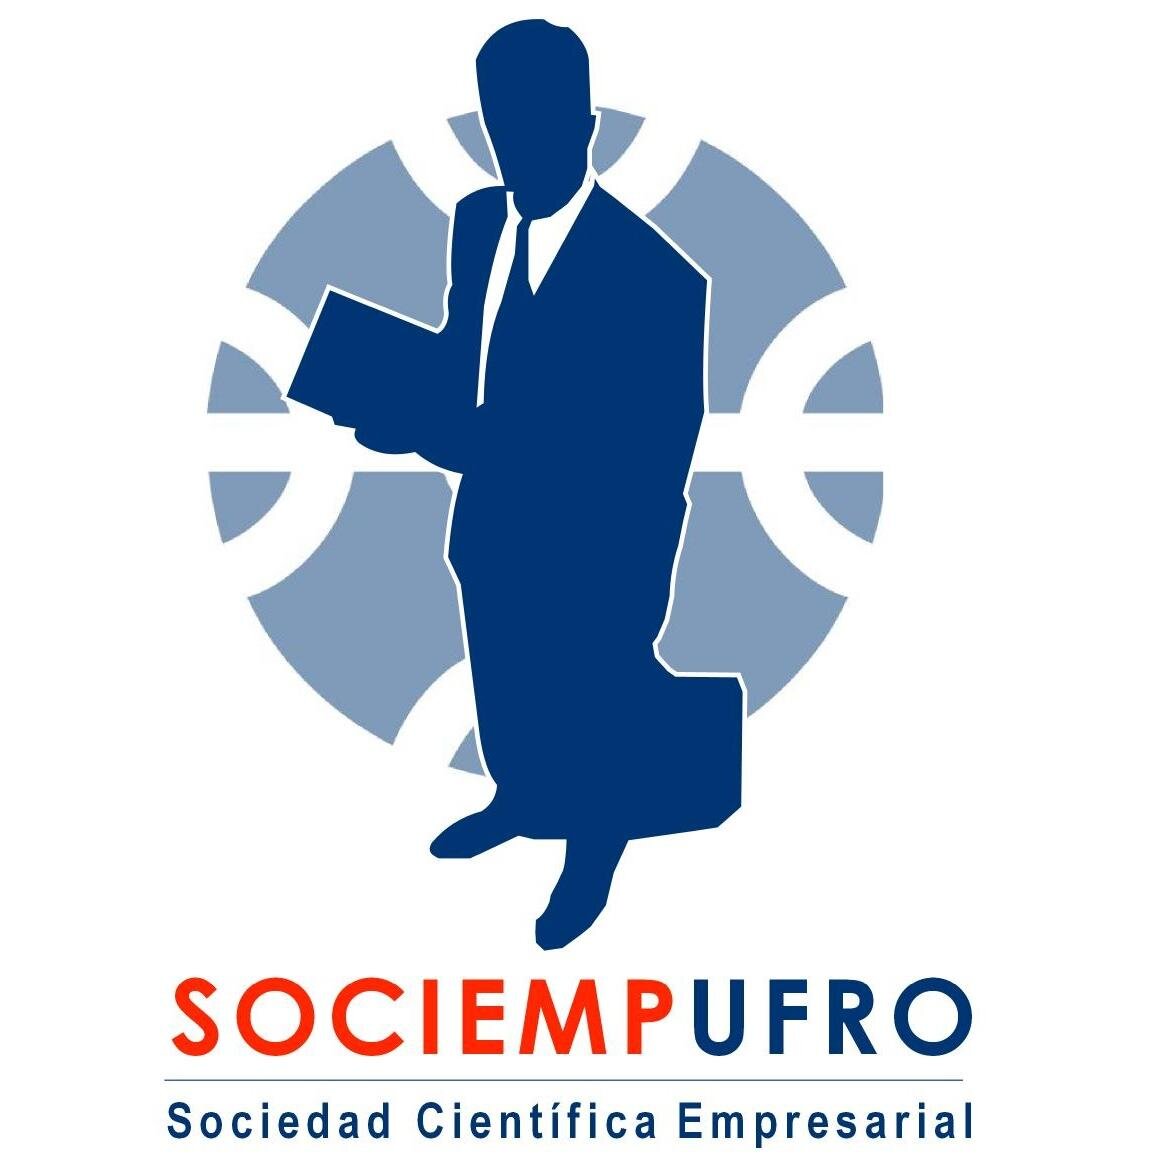 Sociedad Científica Empresarial de la Universidad de La Frontera. Promoviendo el conocimiento de temáticas económicas y empresariales.